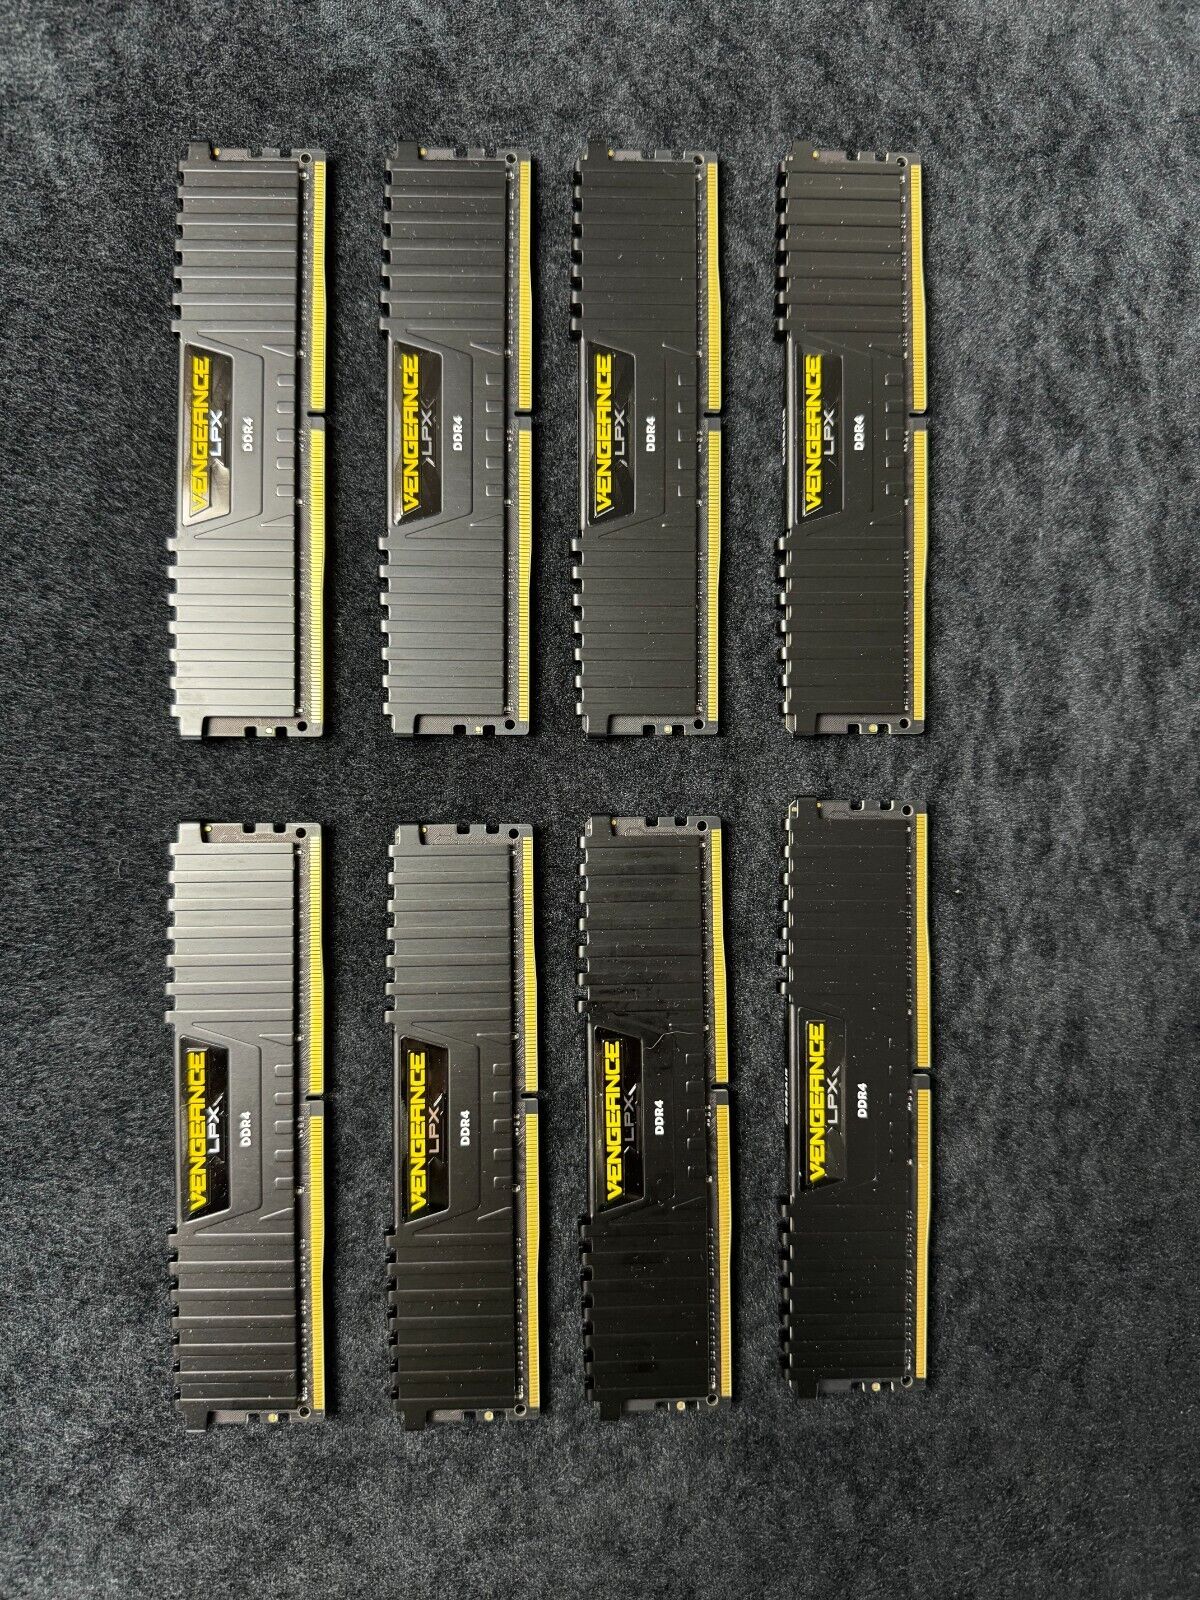 Corsair 32GB (4 x 8GB) 2666MHz PC4-21300 DDR4 DRAM Memory (CMK32GX4M4A2666C16)